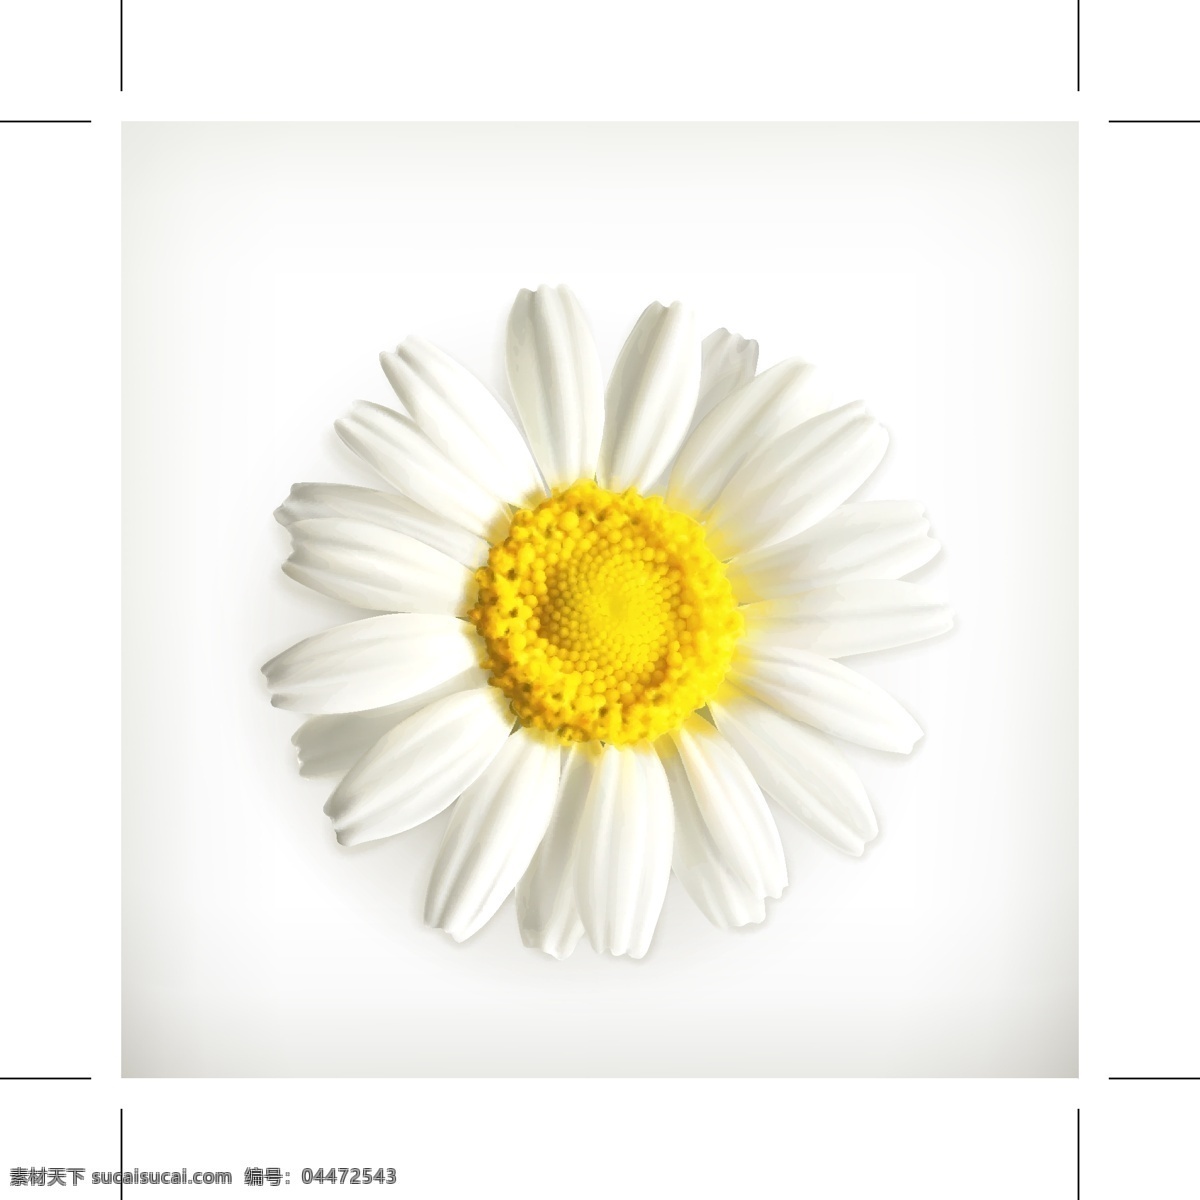 淡雅 美丽 小 菊花 矢量图 白色 小菊花 黄色 自然 矢量素材 设计素材